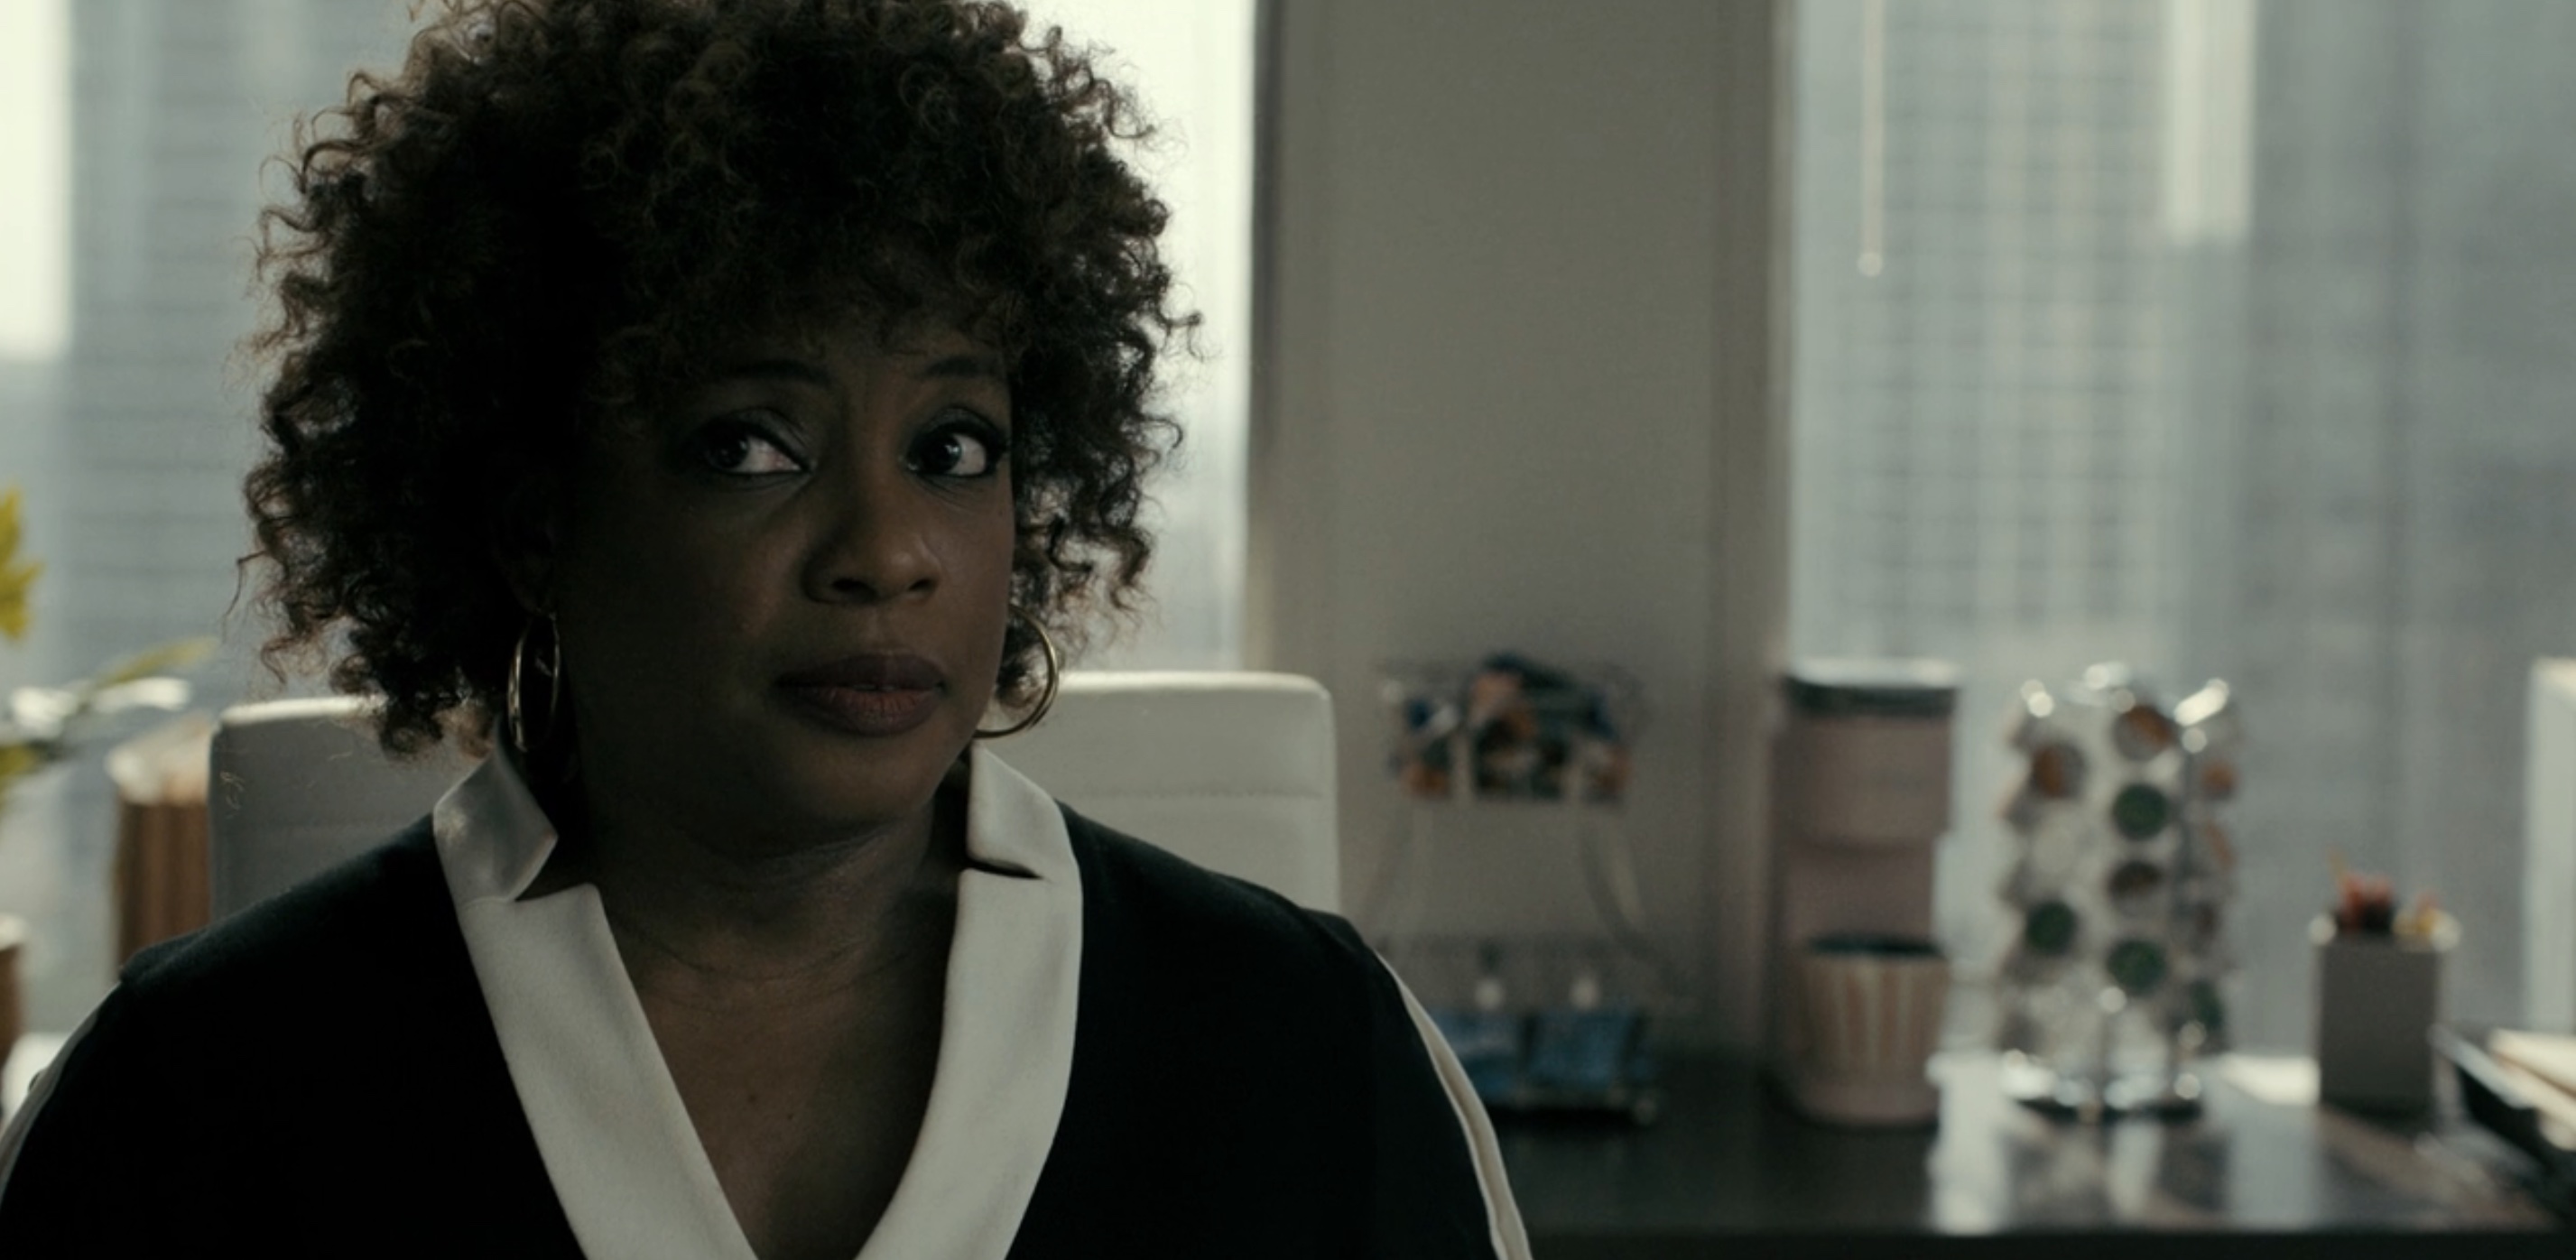 Justified: City Primeval Cast on FX and Hulu - Aunjanue Ellis as Carolyn Wilder